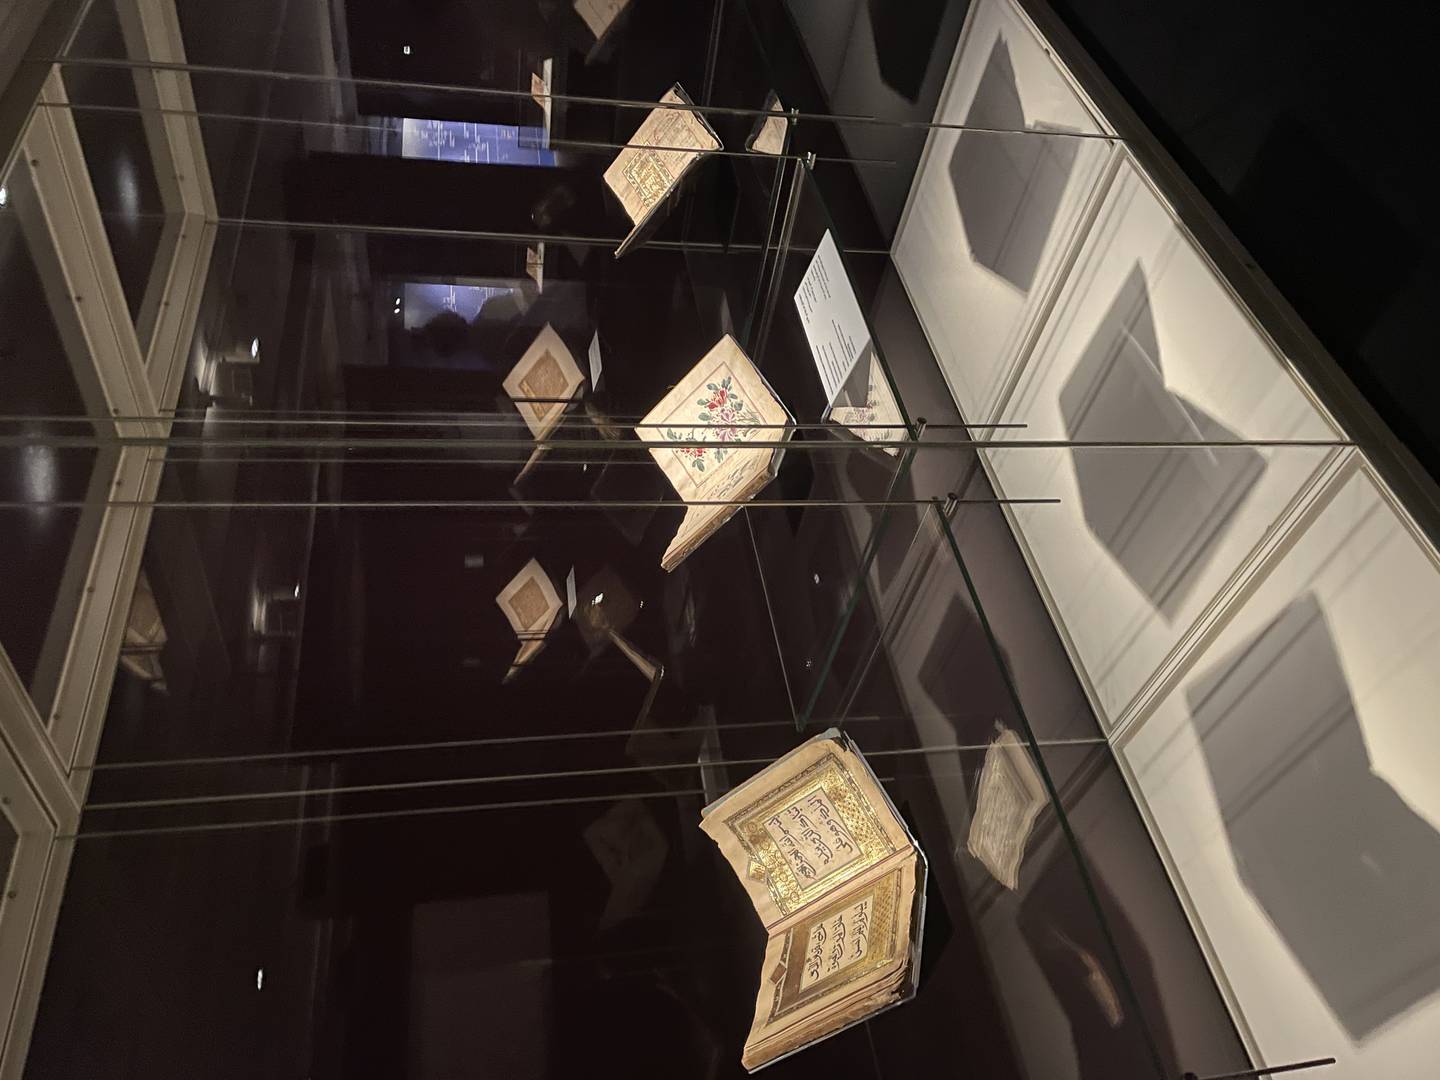 L'exposition comprend plus de 50 manuscrits et artefacts rares provenant de la collection privée de l'homme d'affaires émirati Hamid Jafar.  Photo: Musées de Sharjah